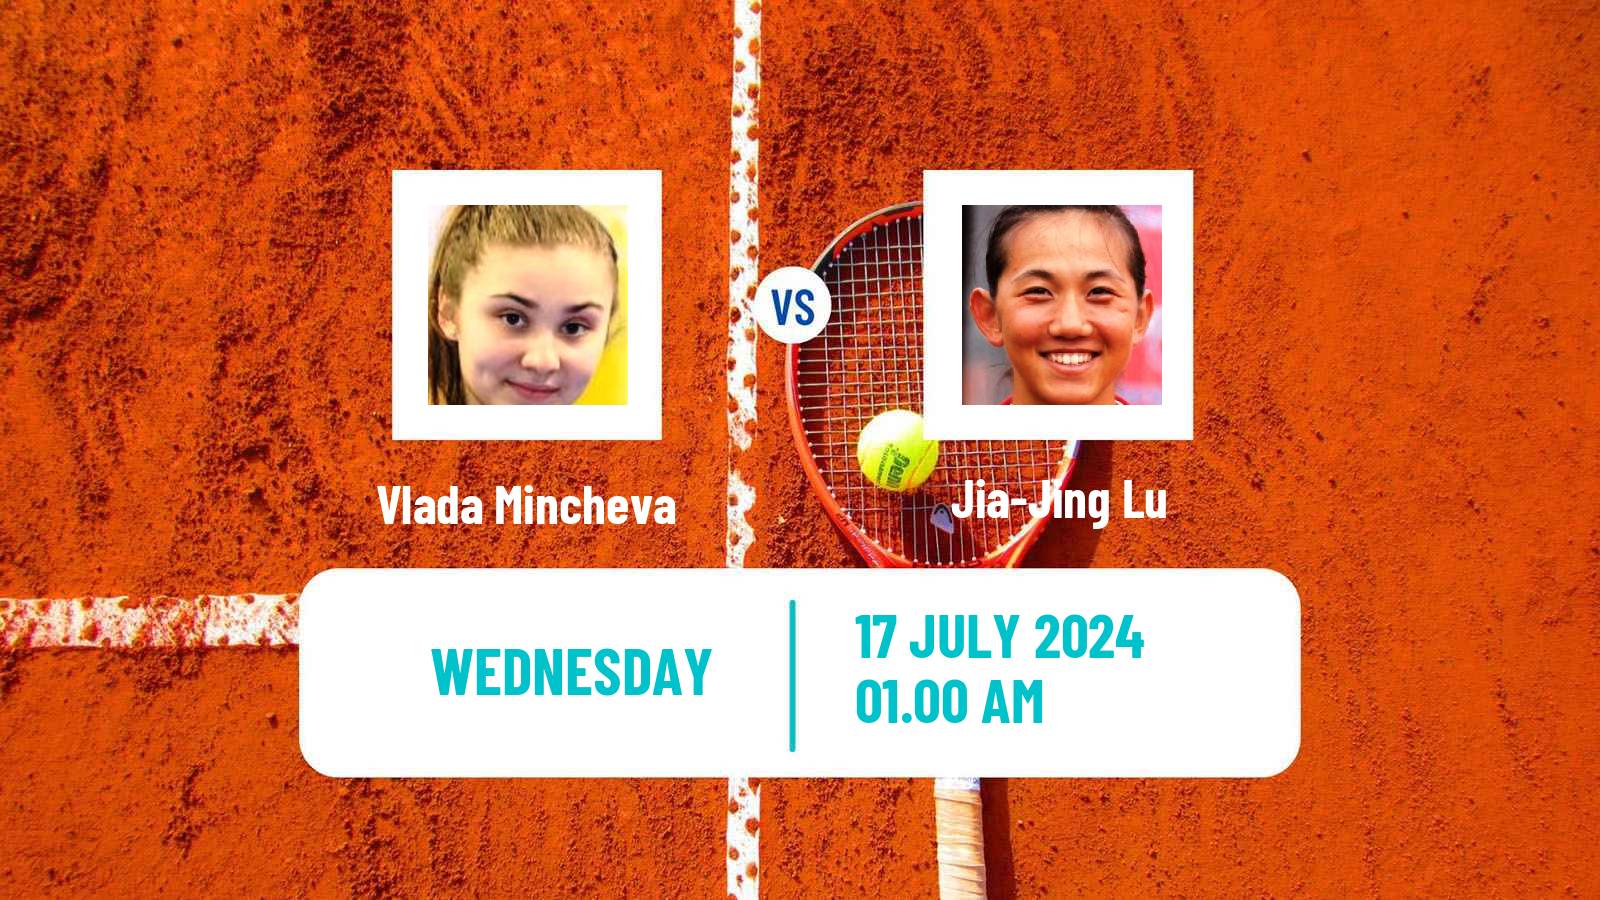 Tennis ITF W35 Tianjin 2 Women Vlada Mincheva - Jia-Jing Lu